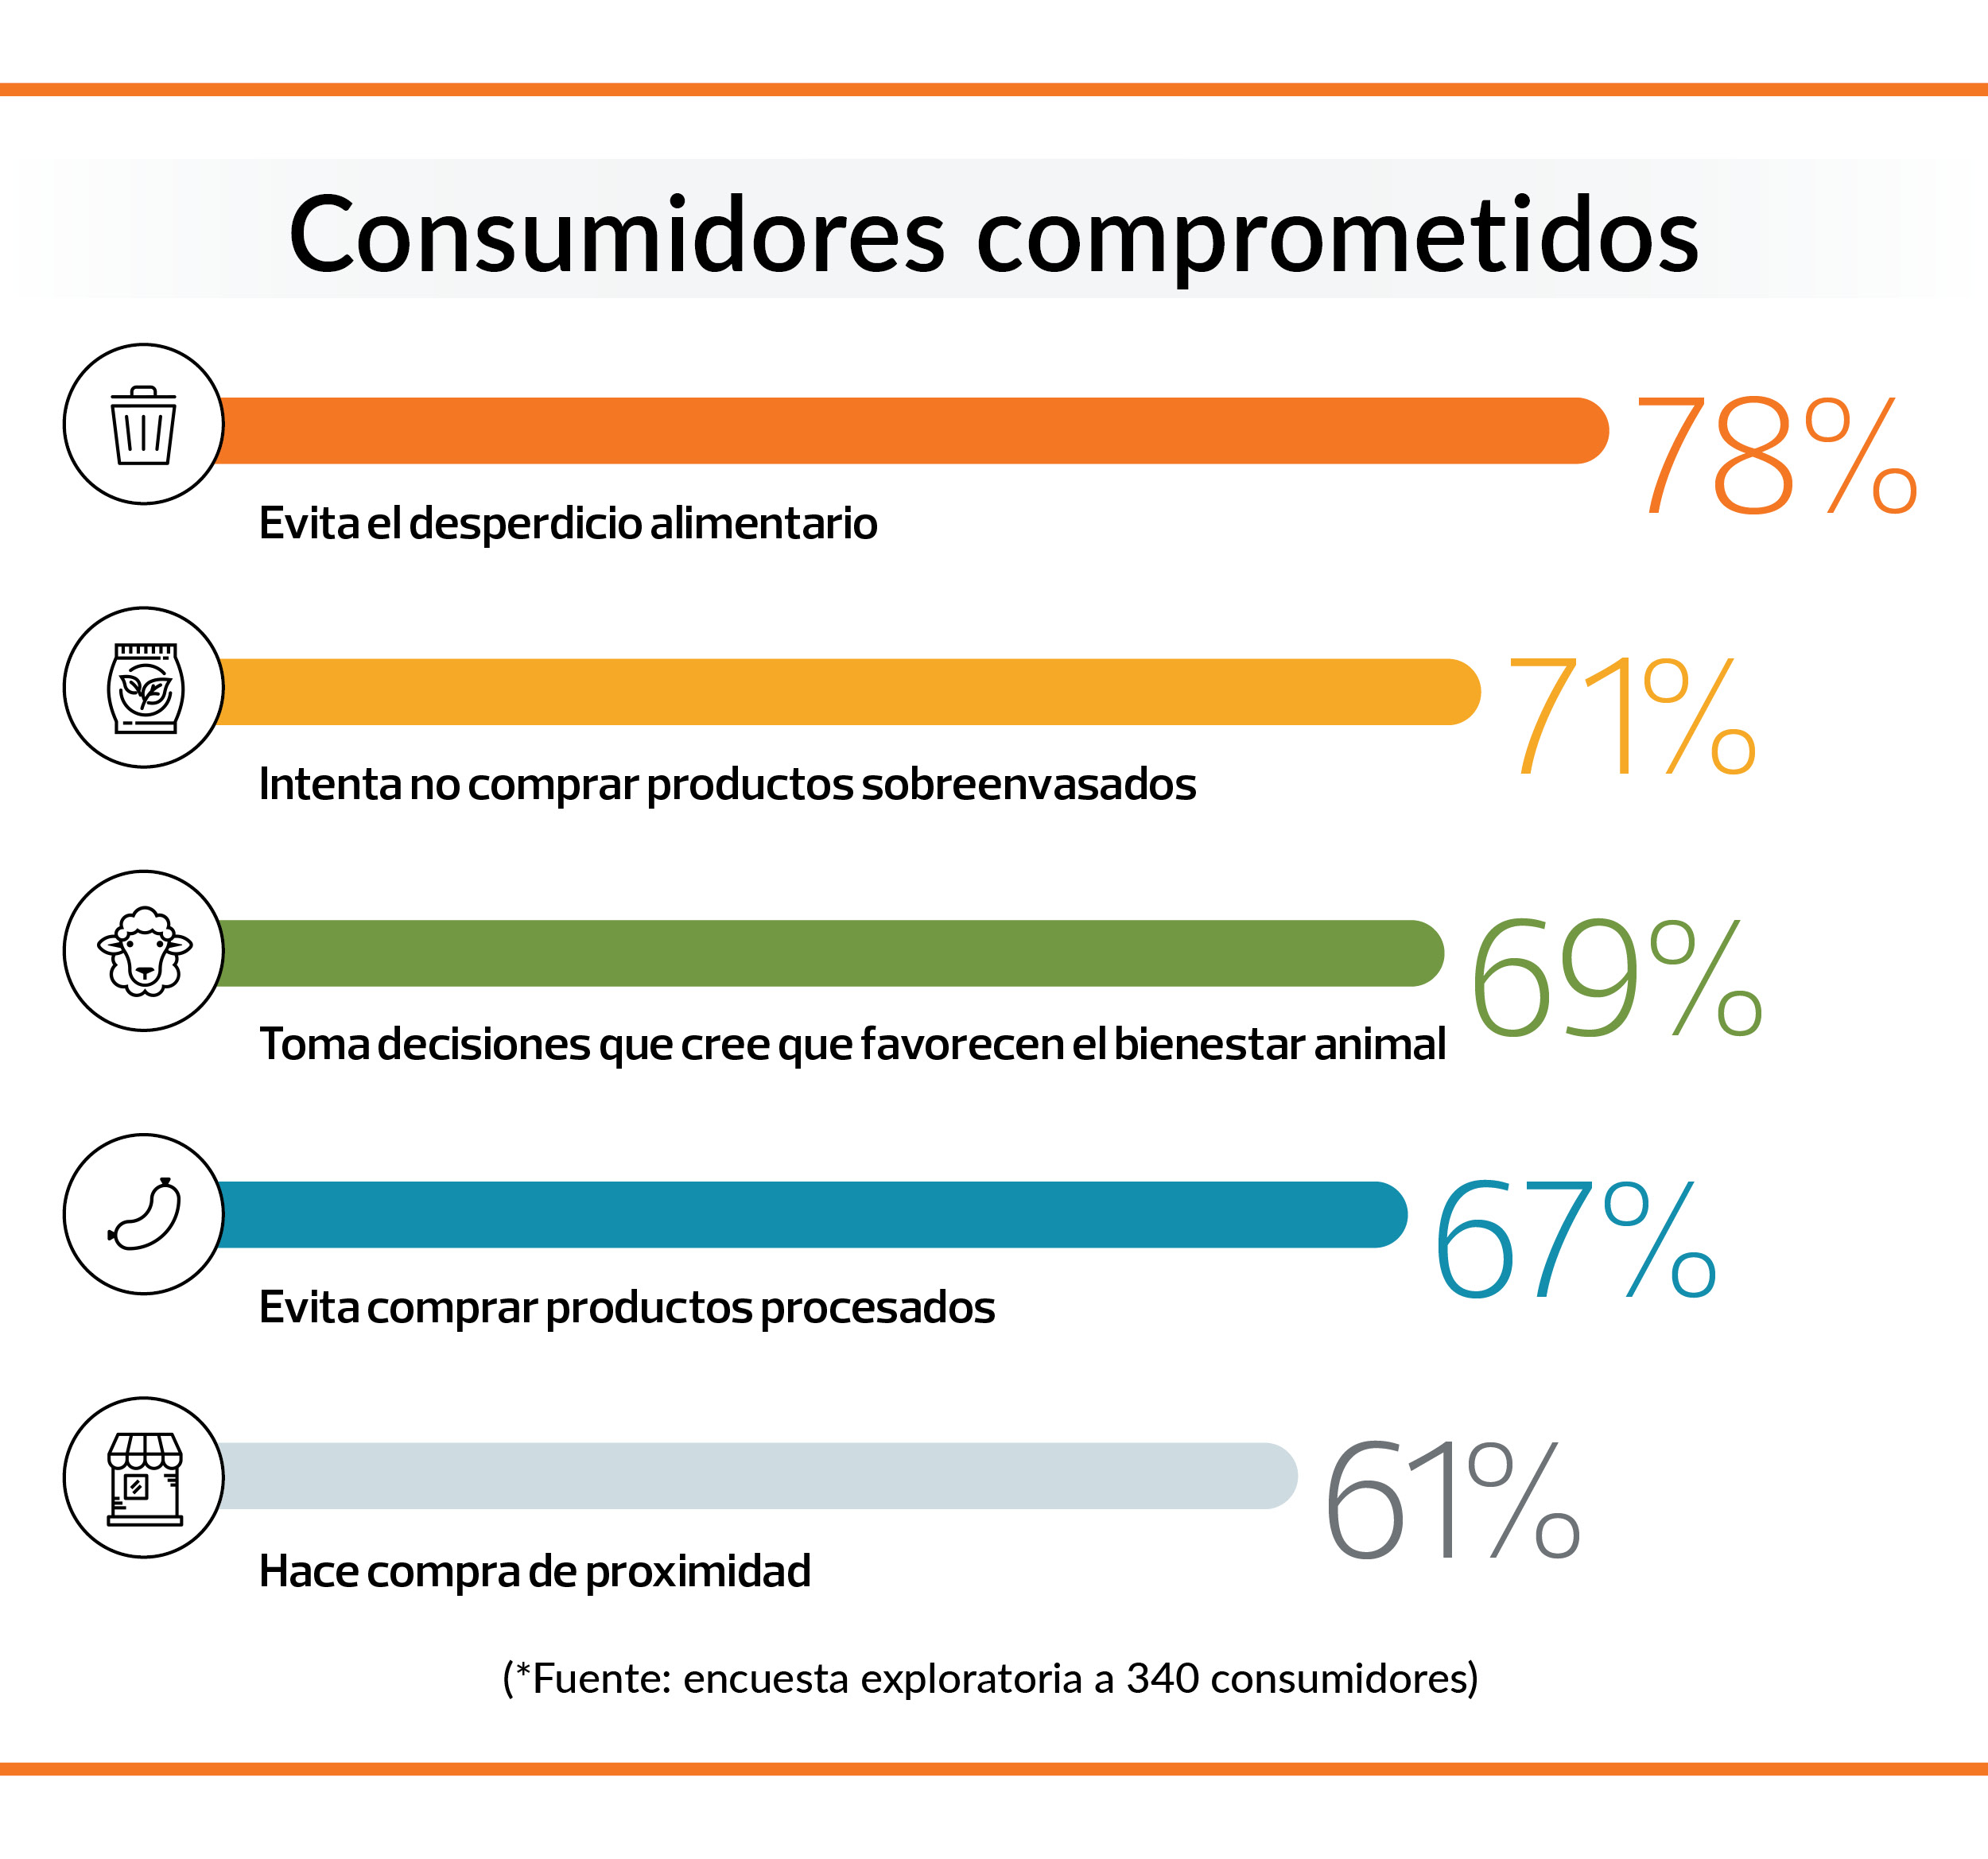 Hábitos de los consumidores comprometidos